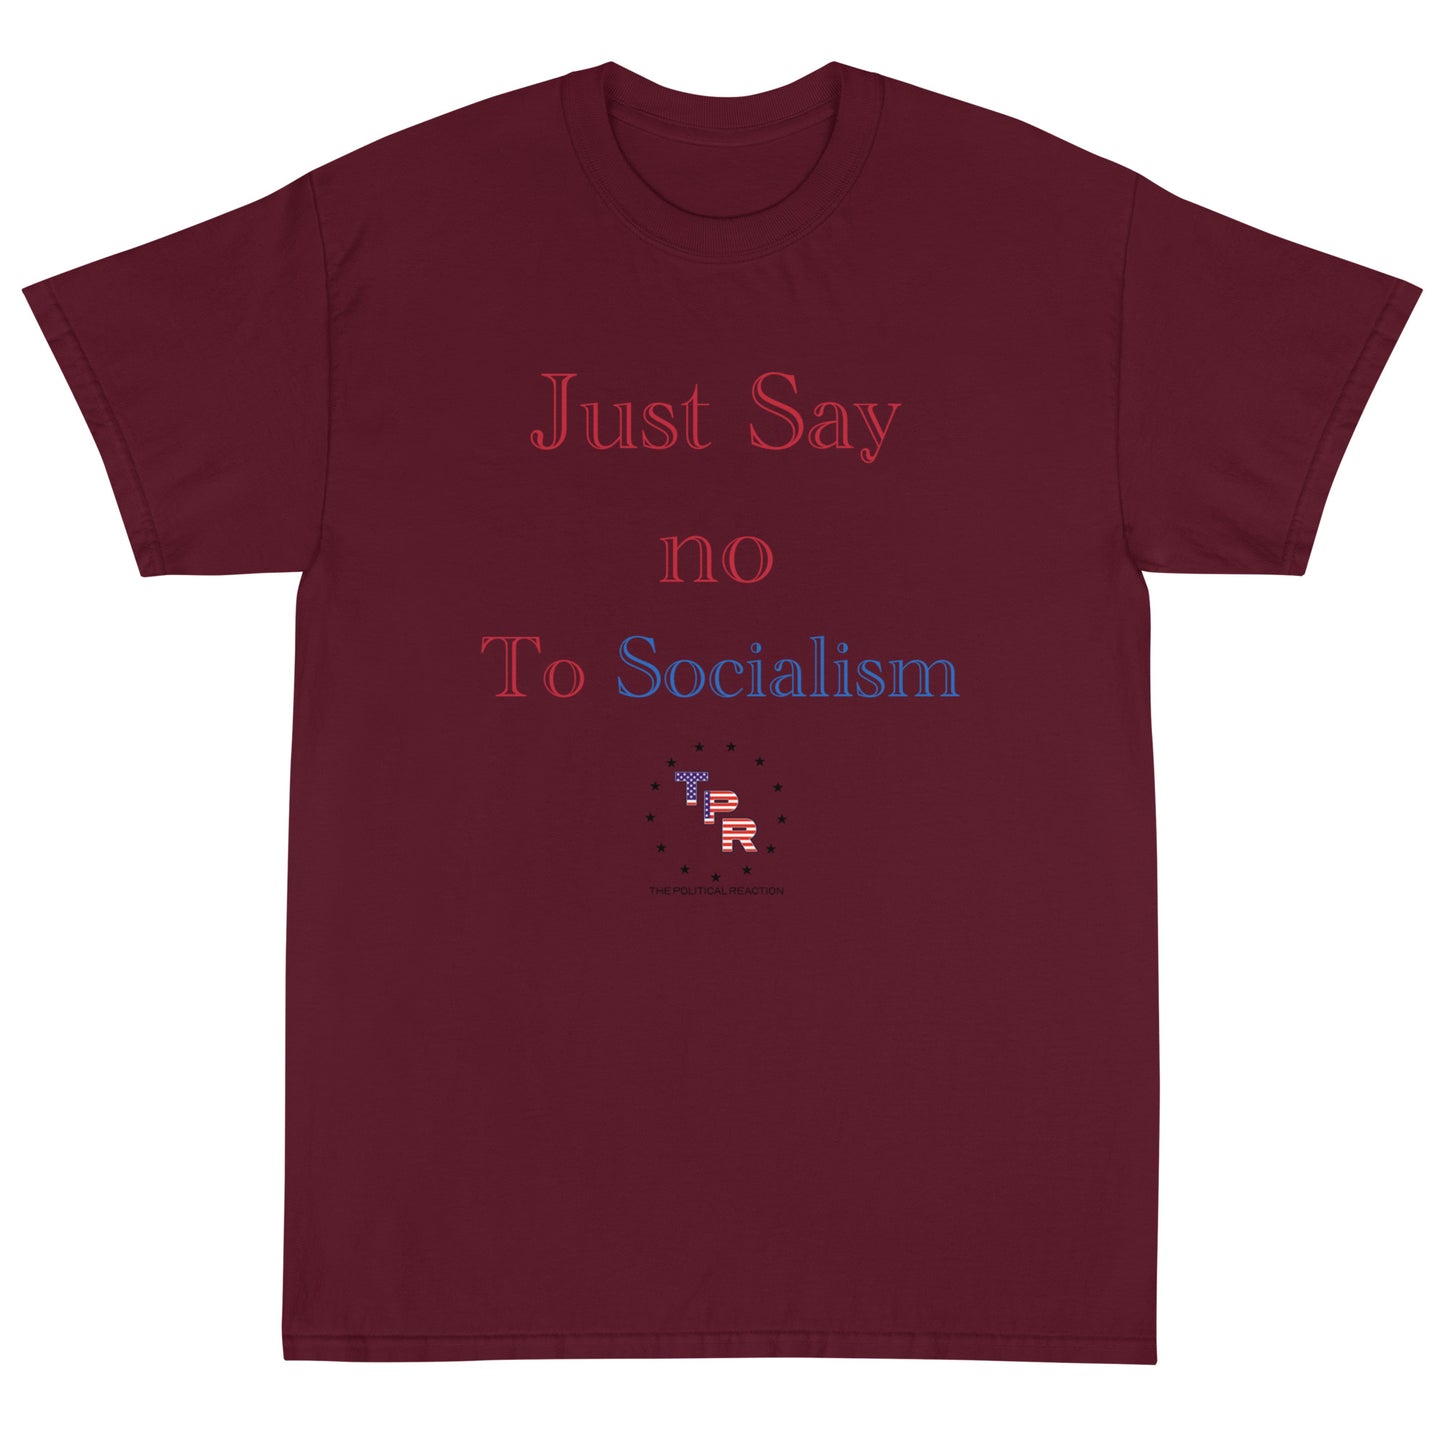 Just-say-no-to-socialism-t-shirt-Maroon